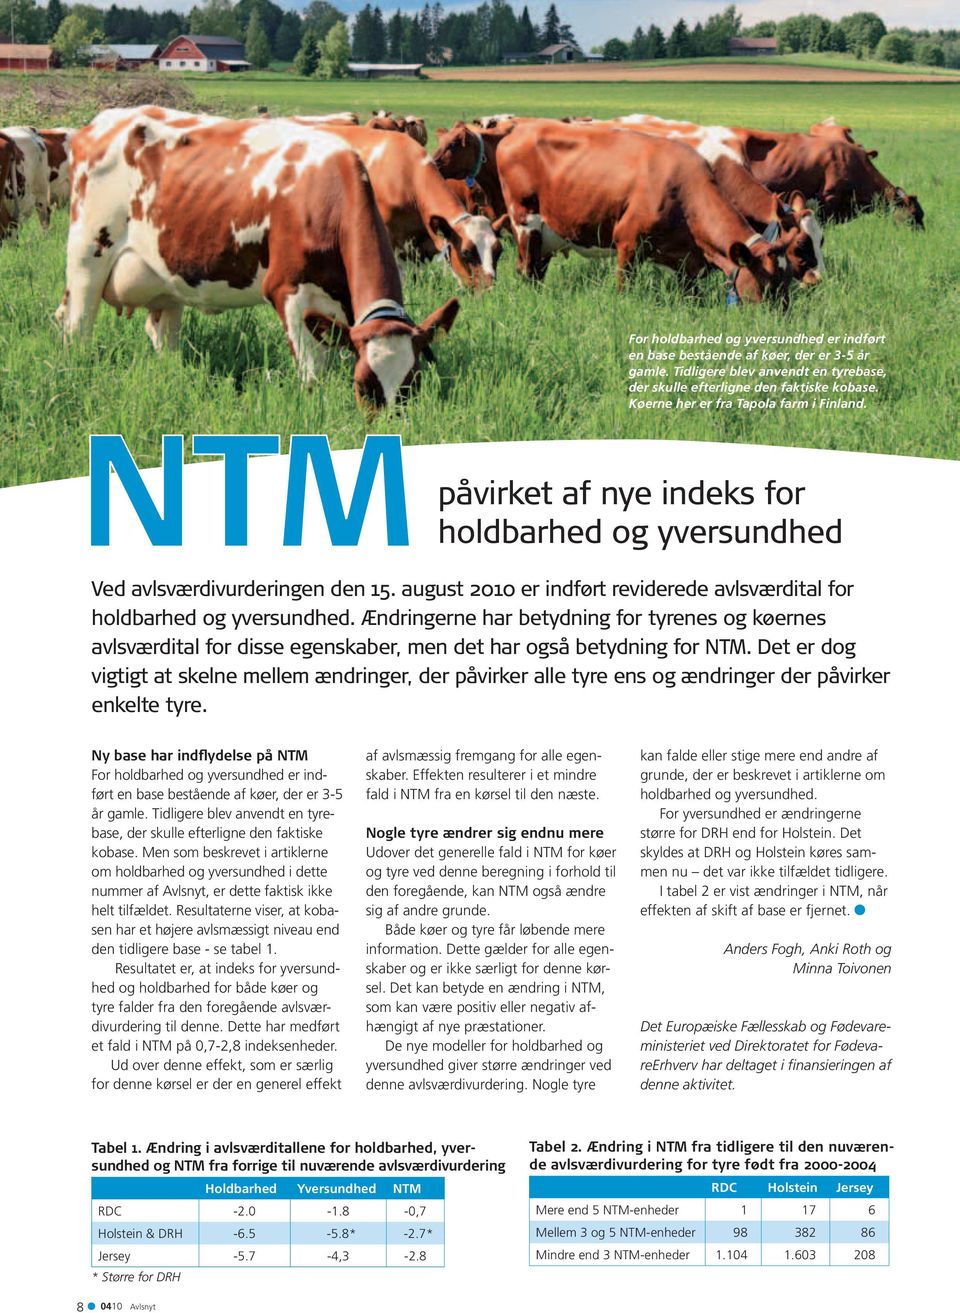 august 2010 er indført reviderede avlsværdital for holdbarhed og yversundhed. Ændringerne har betydning for tyrenes og køernes avlsværdital for disse egenskaber, men det har også betydning for NTM.